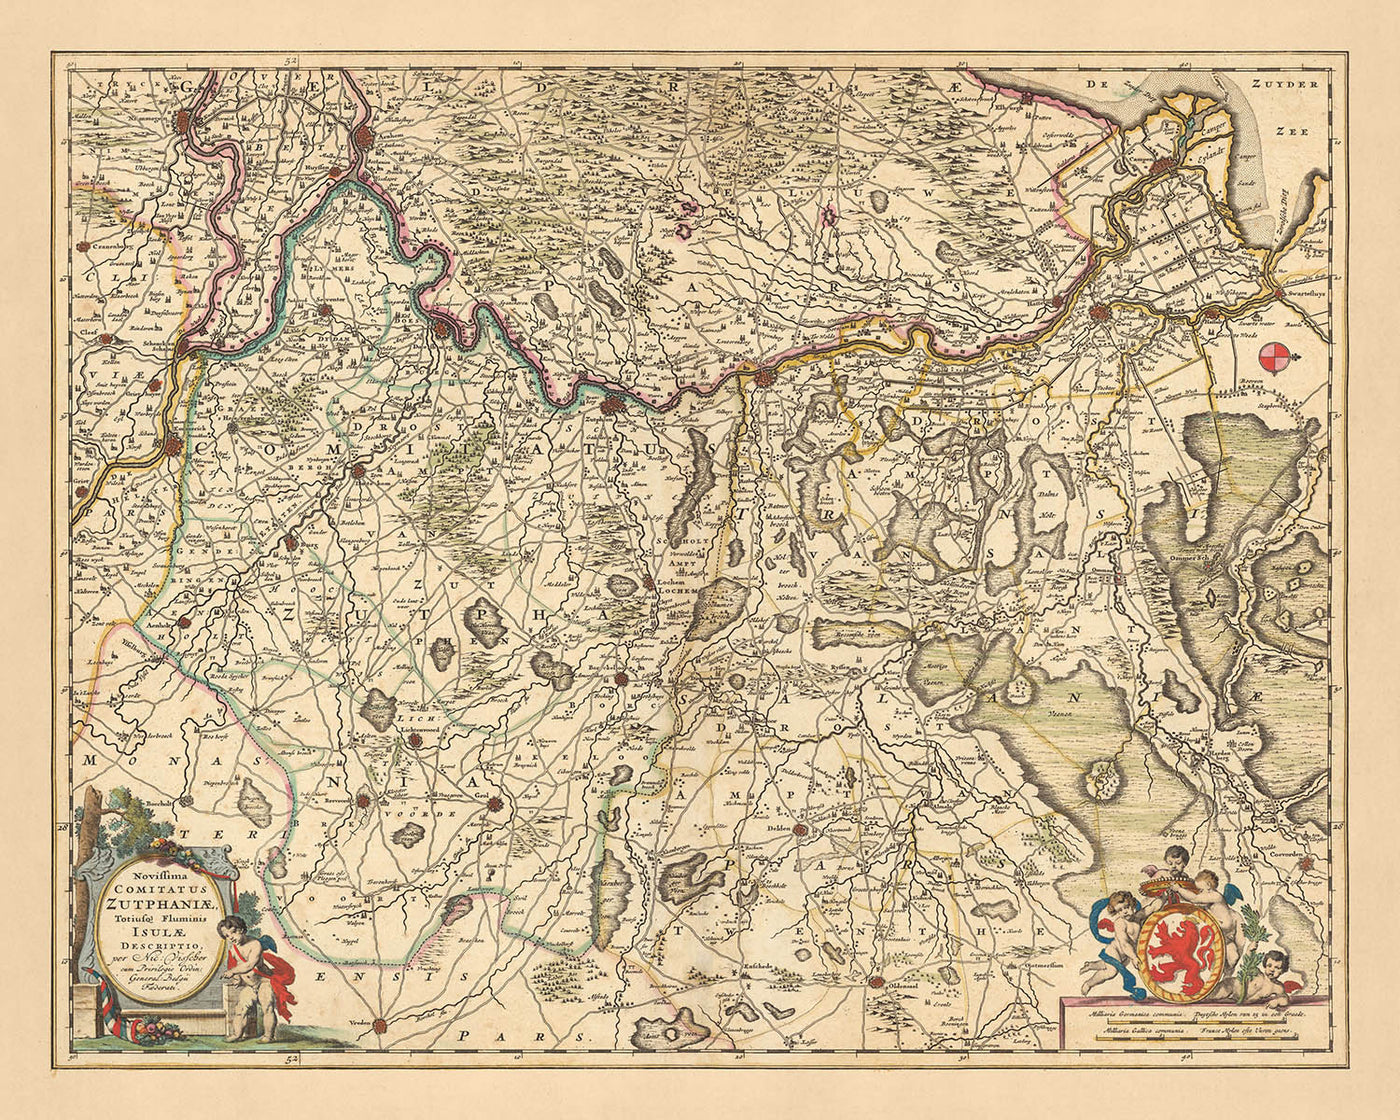 Alte Karte von Zutphen von Visscher, 1690: Apeldoorn, Arnheim, Nijmegen, Deventer, Nationalpark De Hoge Veluwe